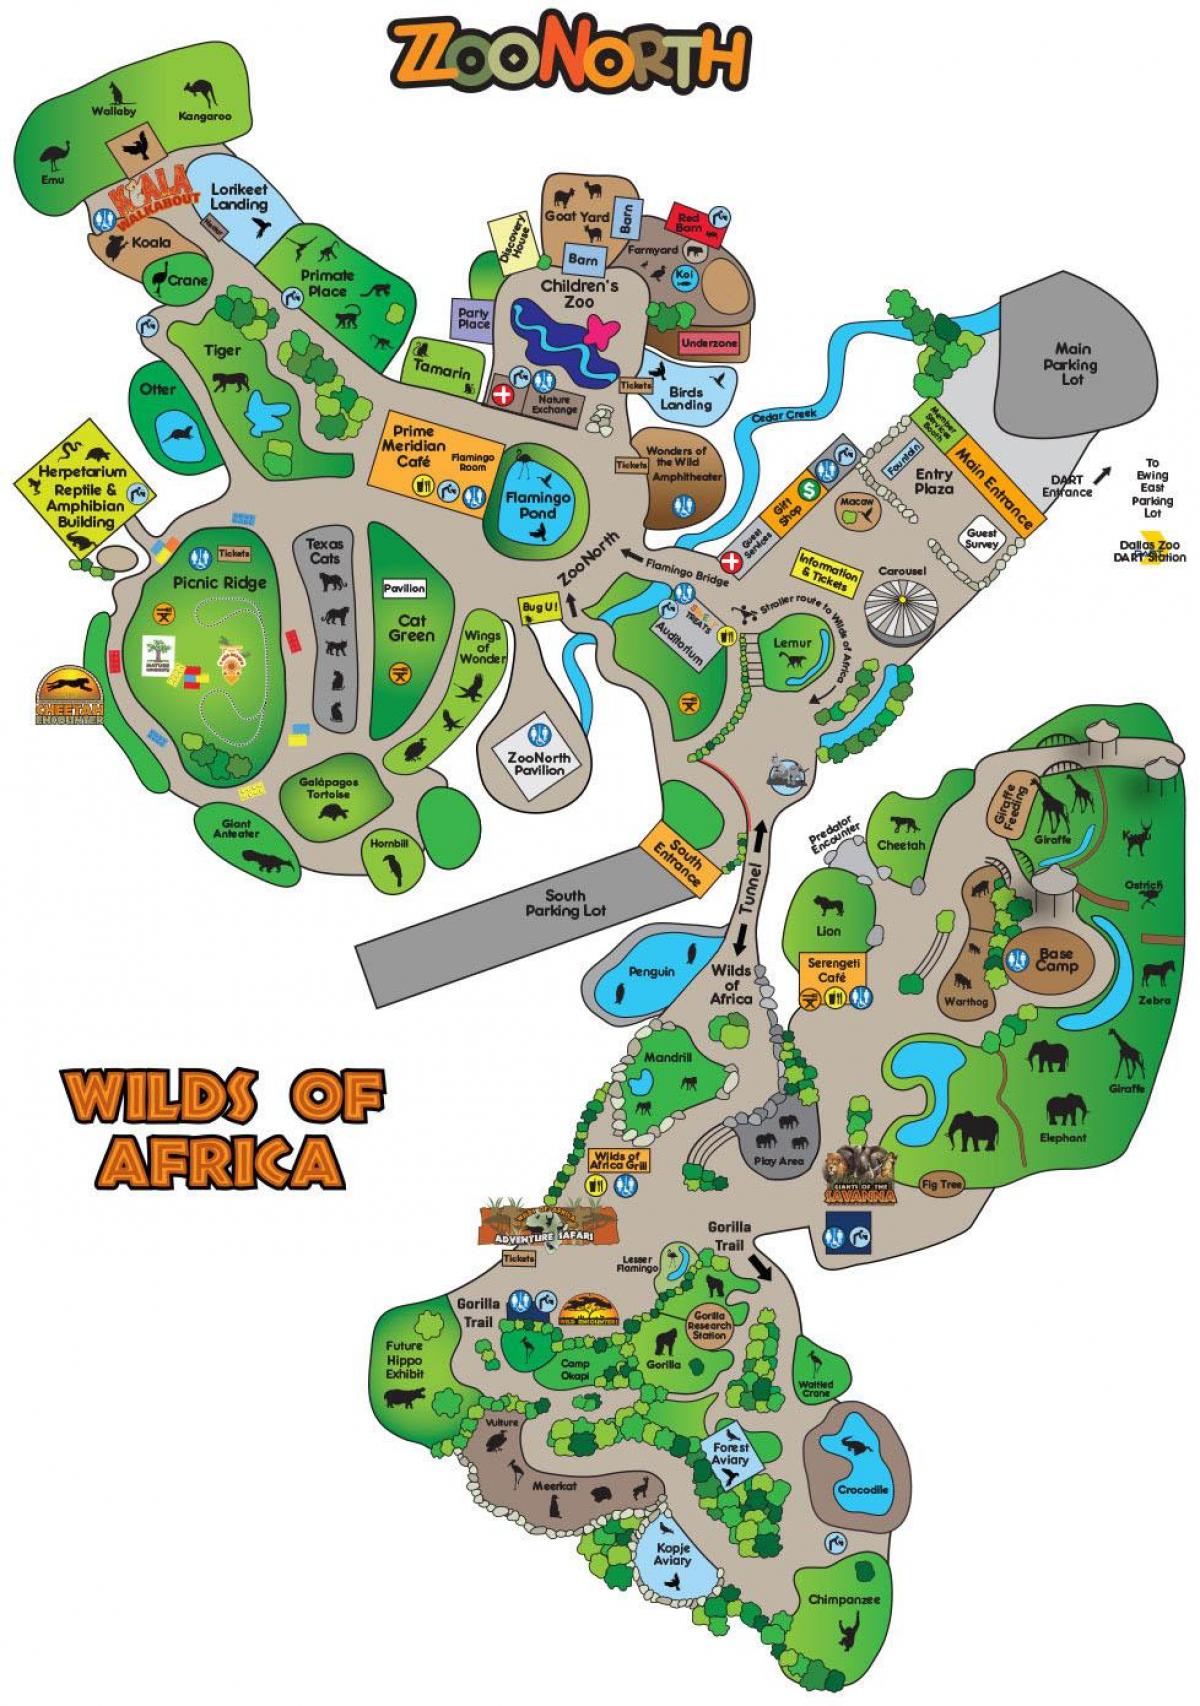 χάρτης από το Dallas zoo